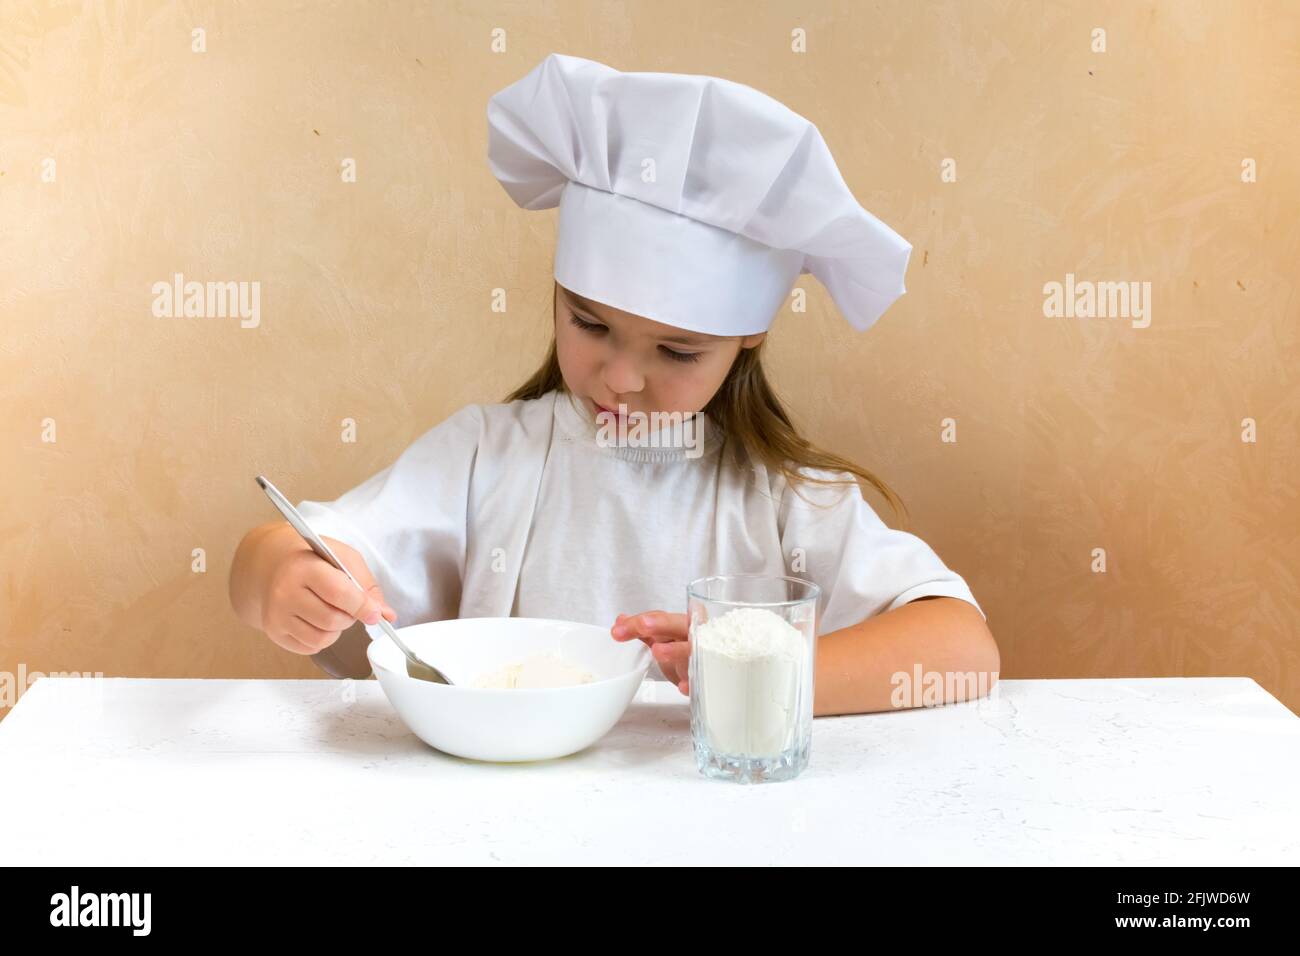 Una bambina vestita come cuoco impasta l'impasto. Cucina bambino stile di vita concetto. Il capretto ama, ha divertimento, studia e gioca nella cucina Foto Stock